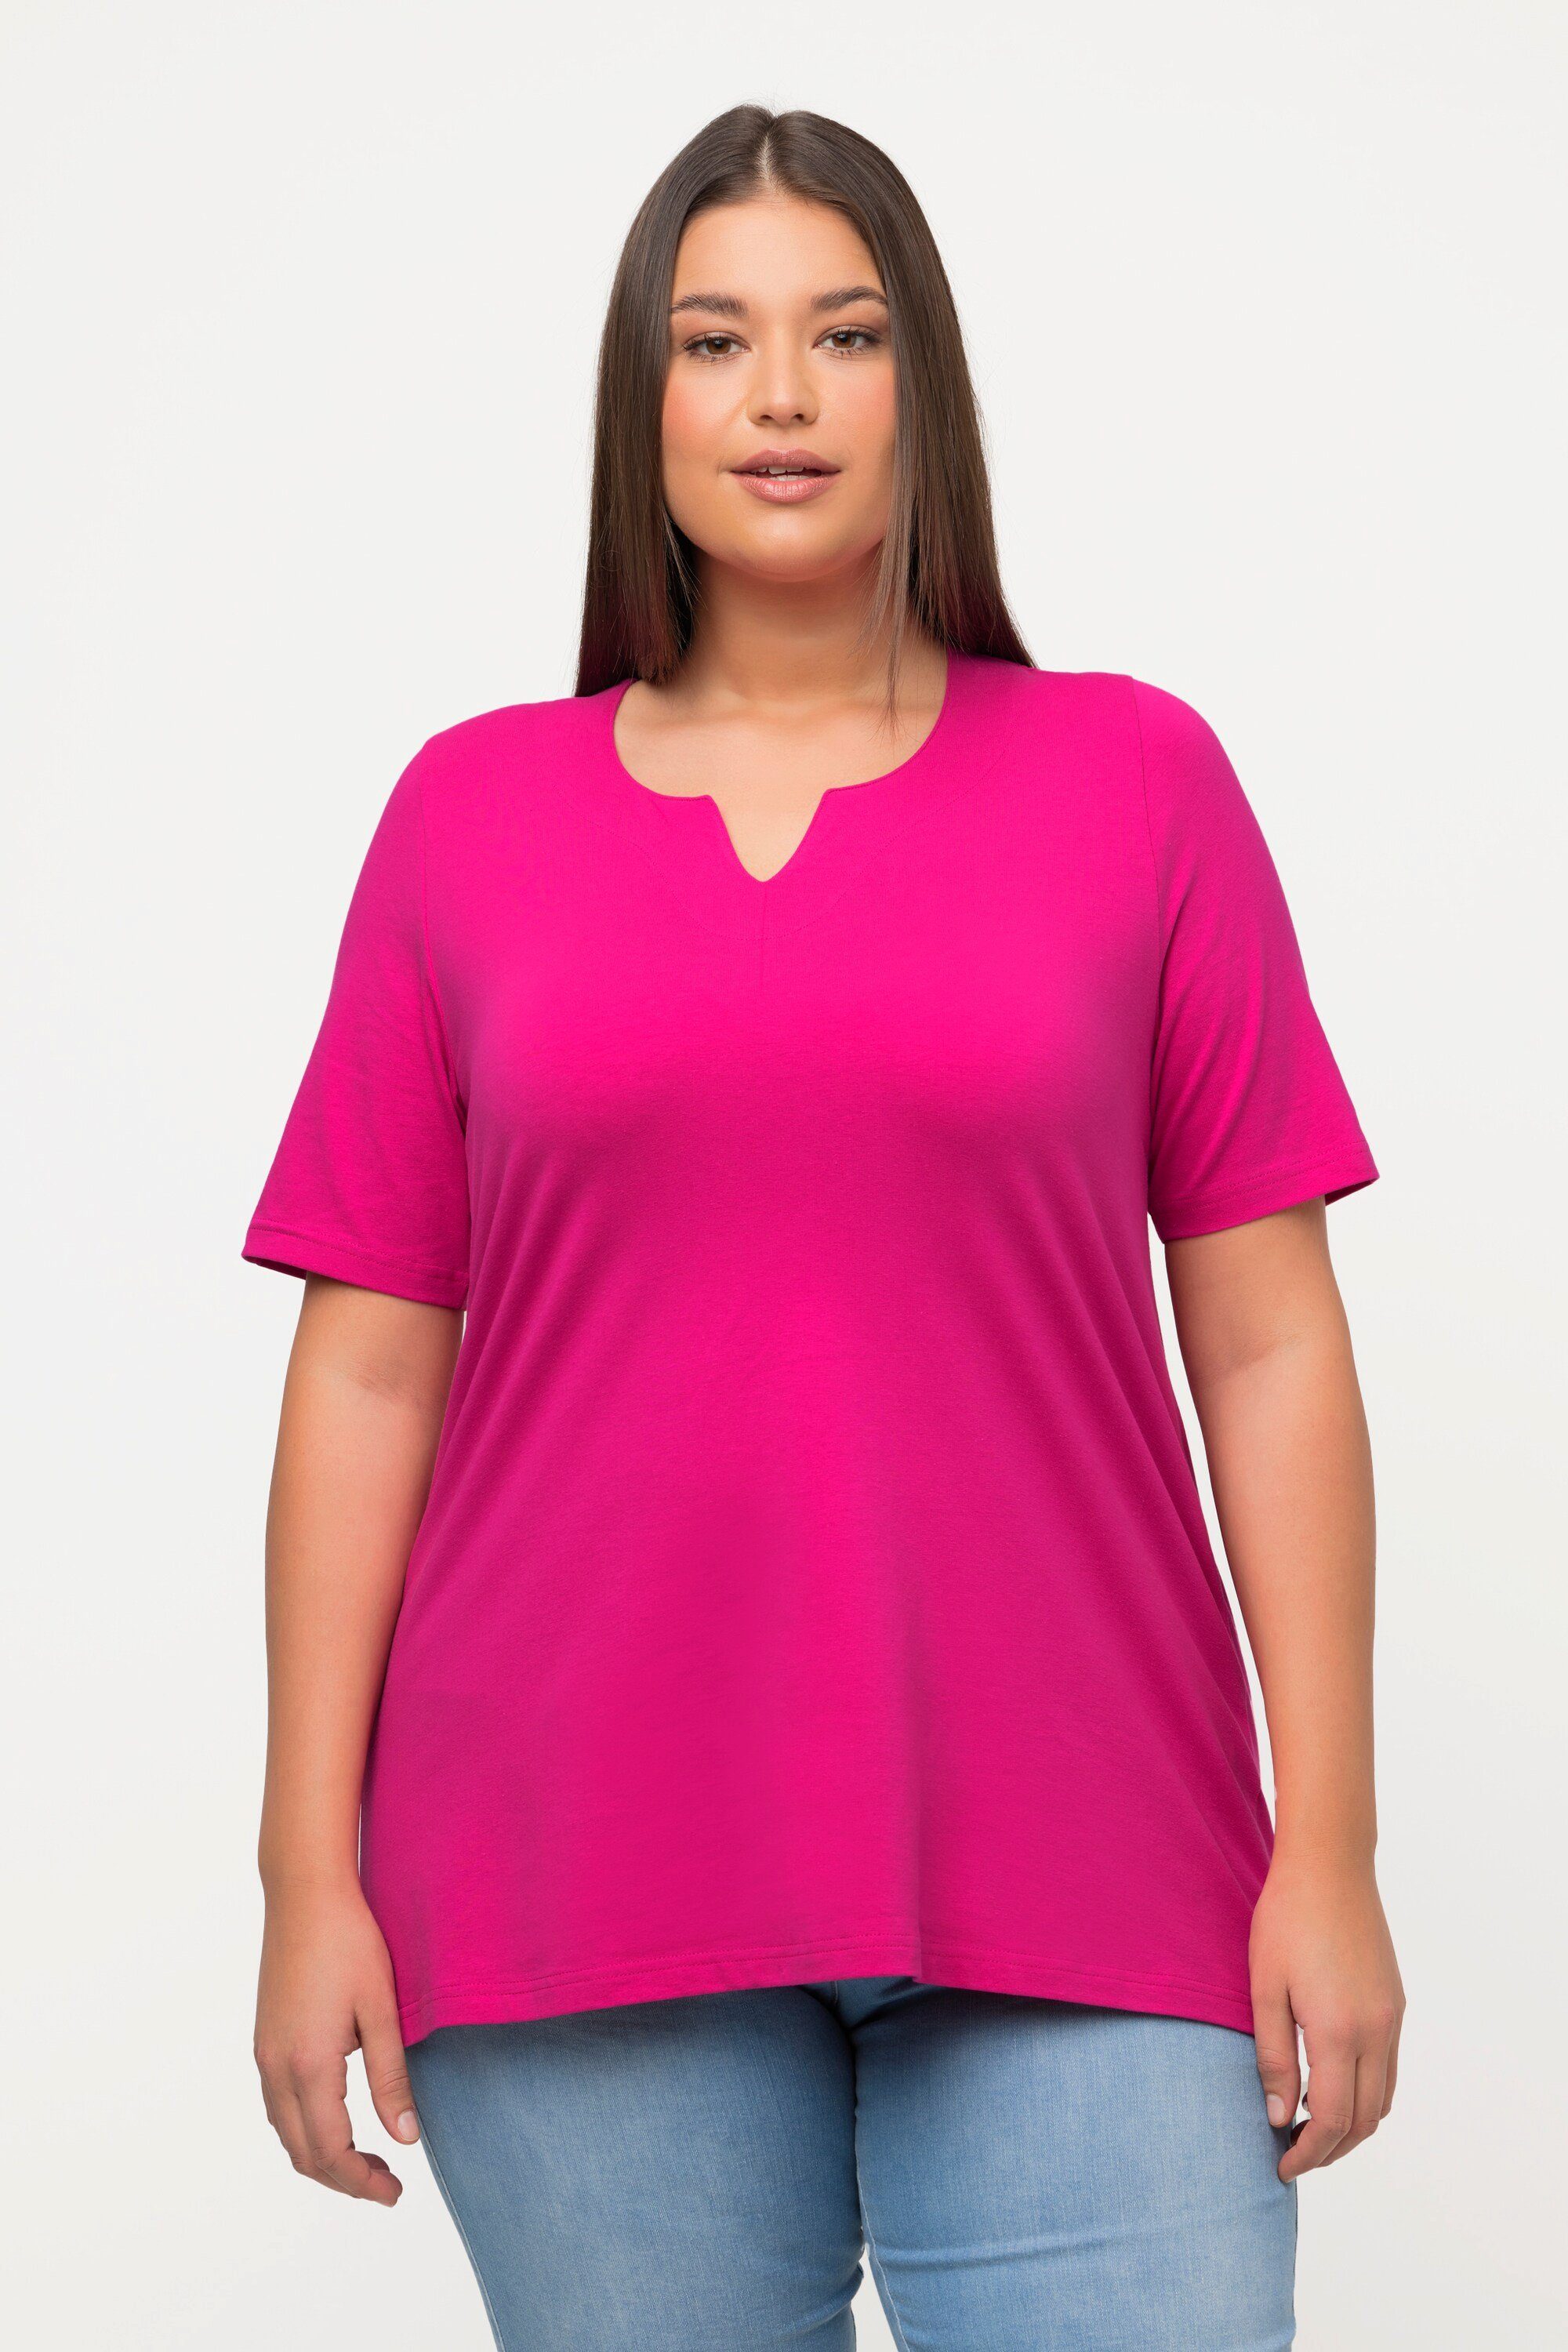 Popken fuchsia T-Shirt Tunika-Ausschnitt pink A-Linie Rundhalsshirt Halbarm Ulla